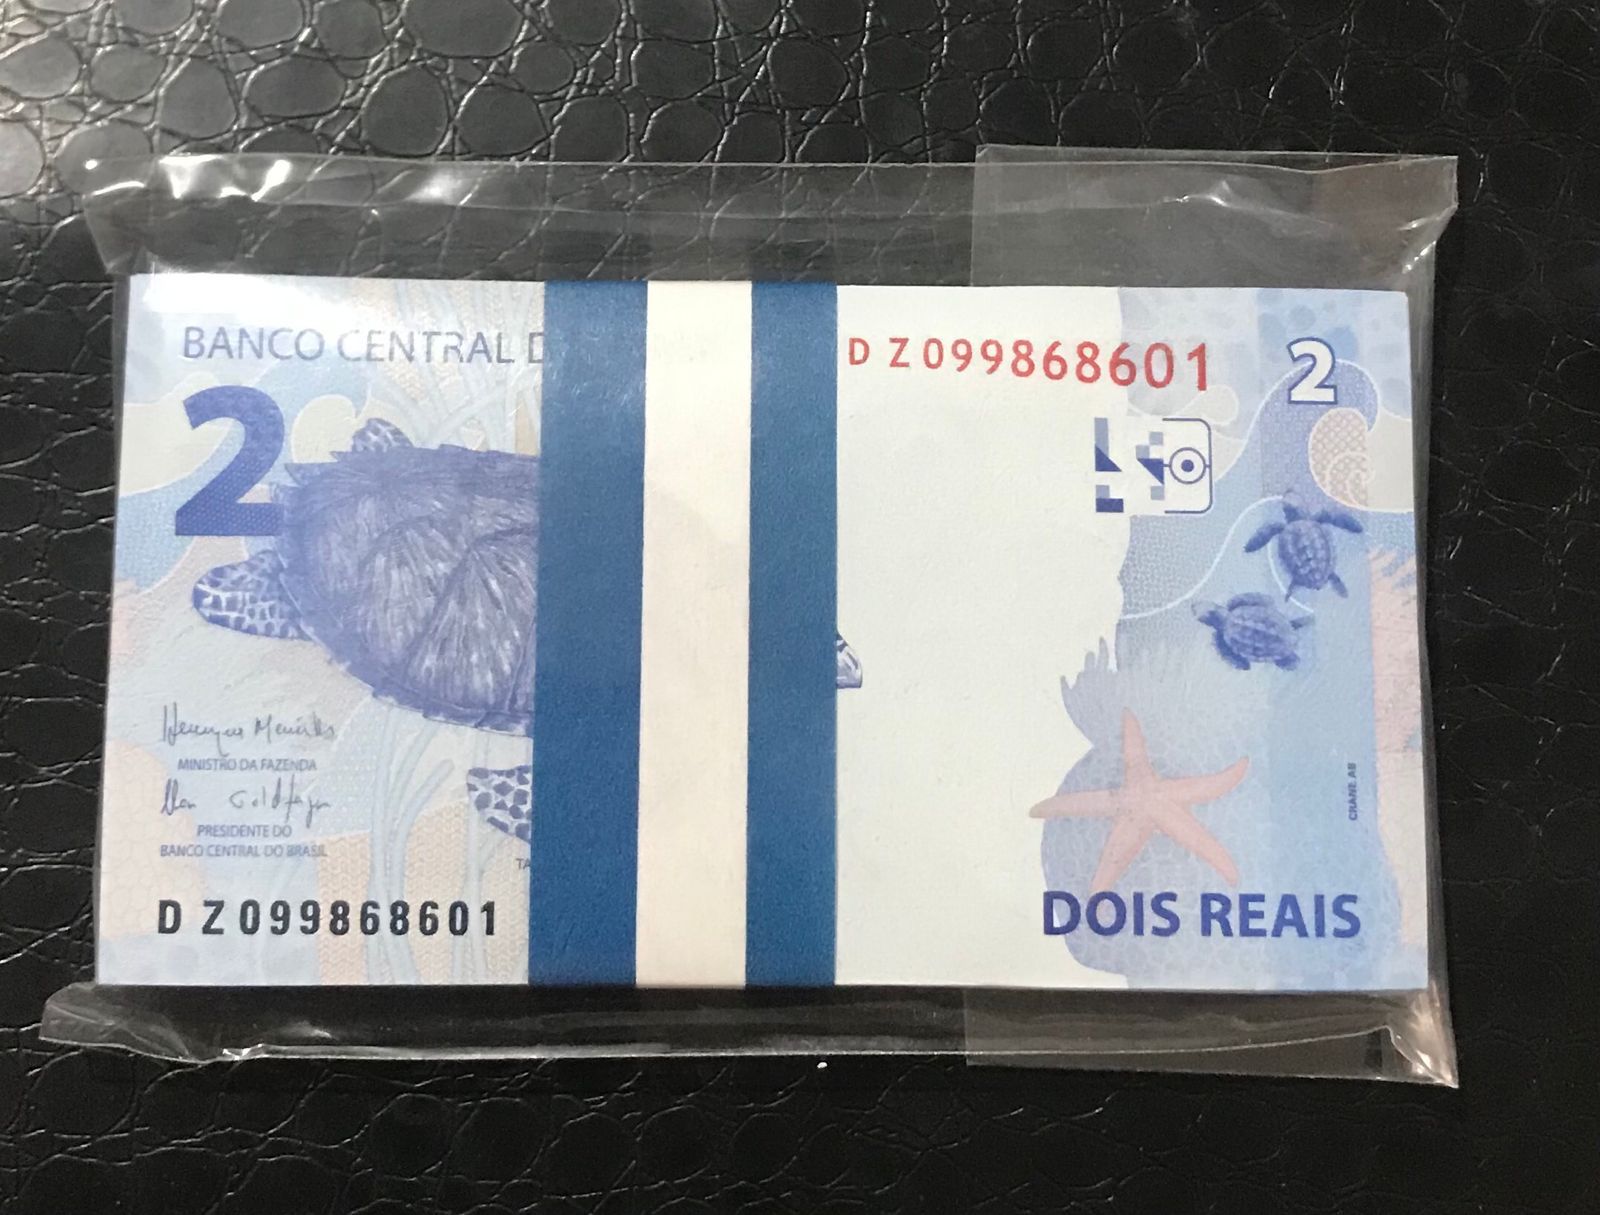 Você pode ter uma nota de R$ 2 feita na Suécia. Saiba identificar